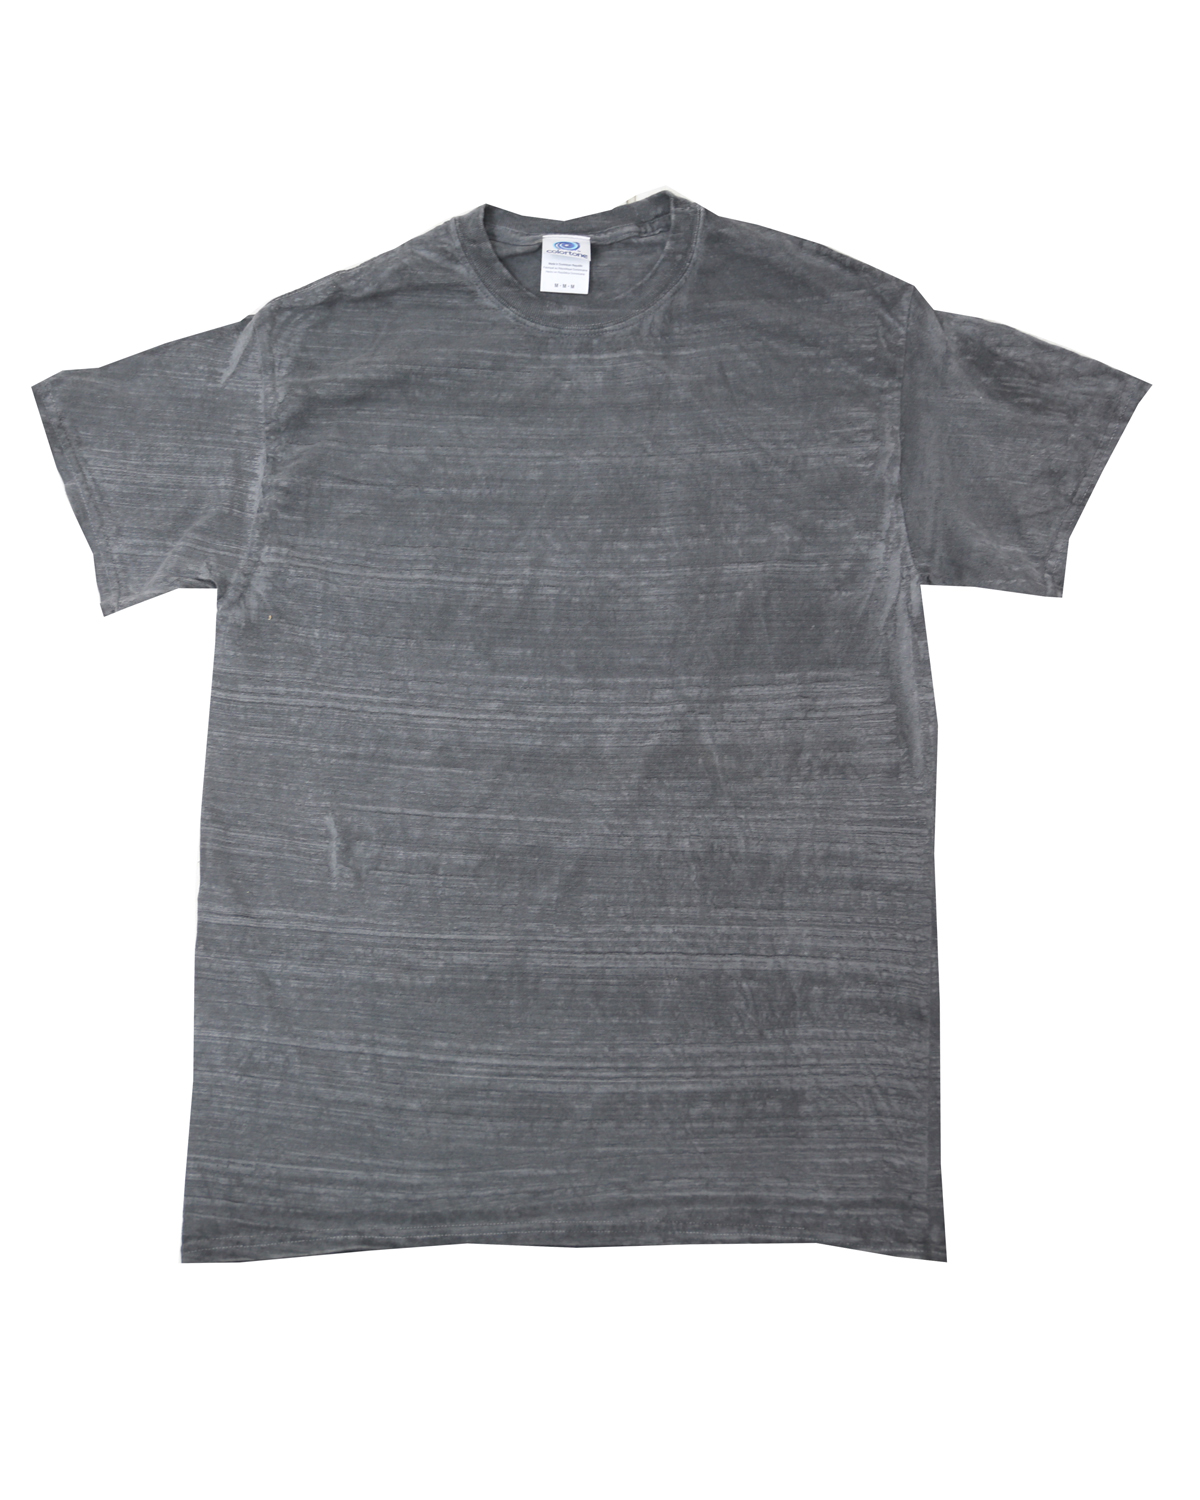 Tie-Dye CD1375 - Drop Ship Stripe T-Shirt